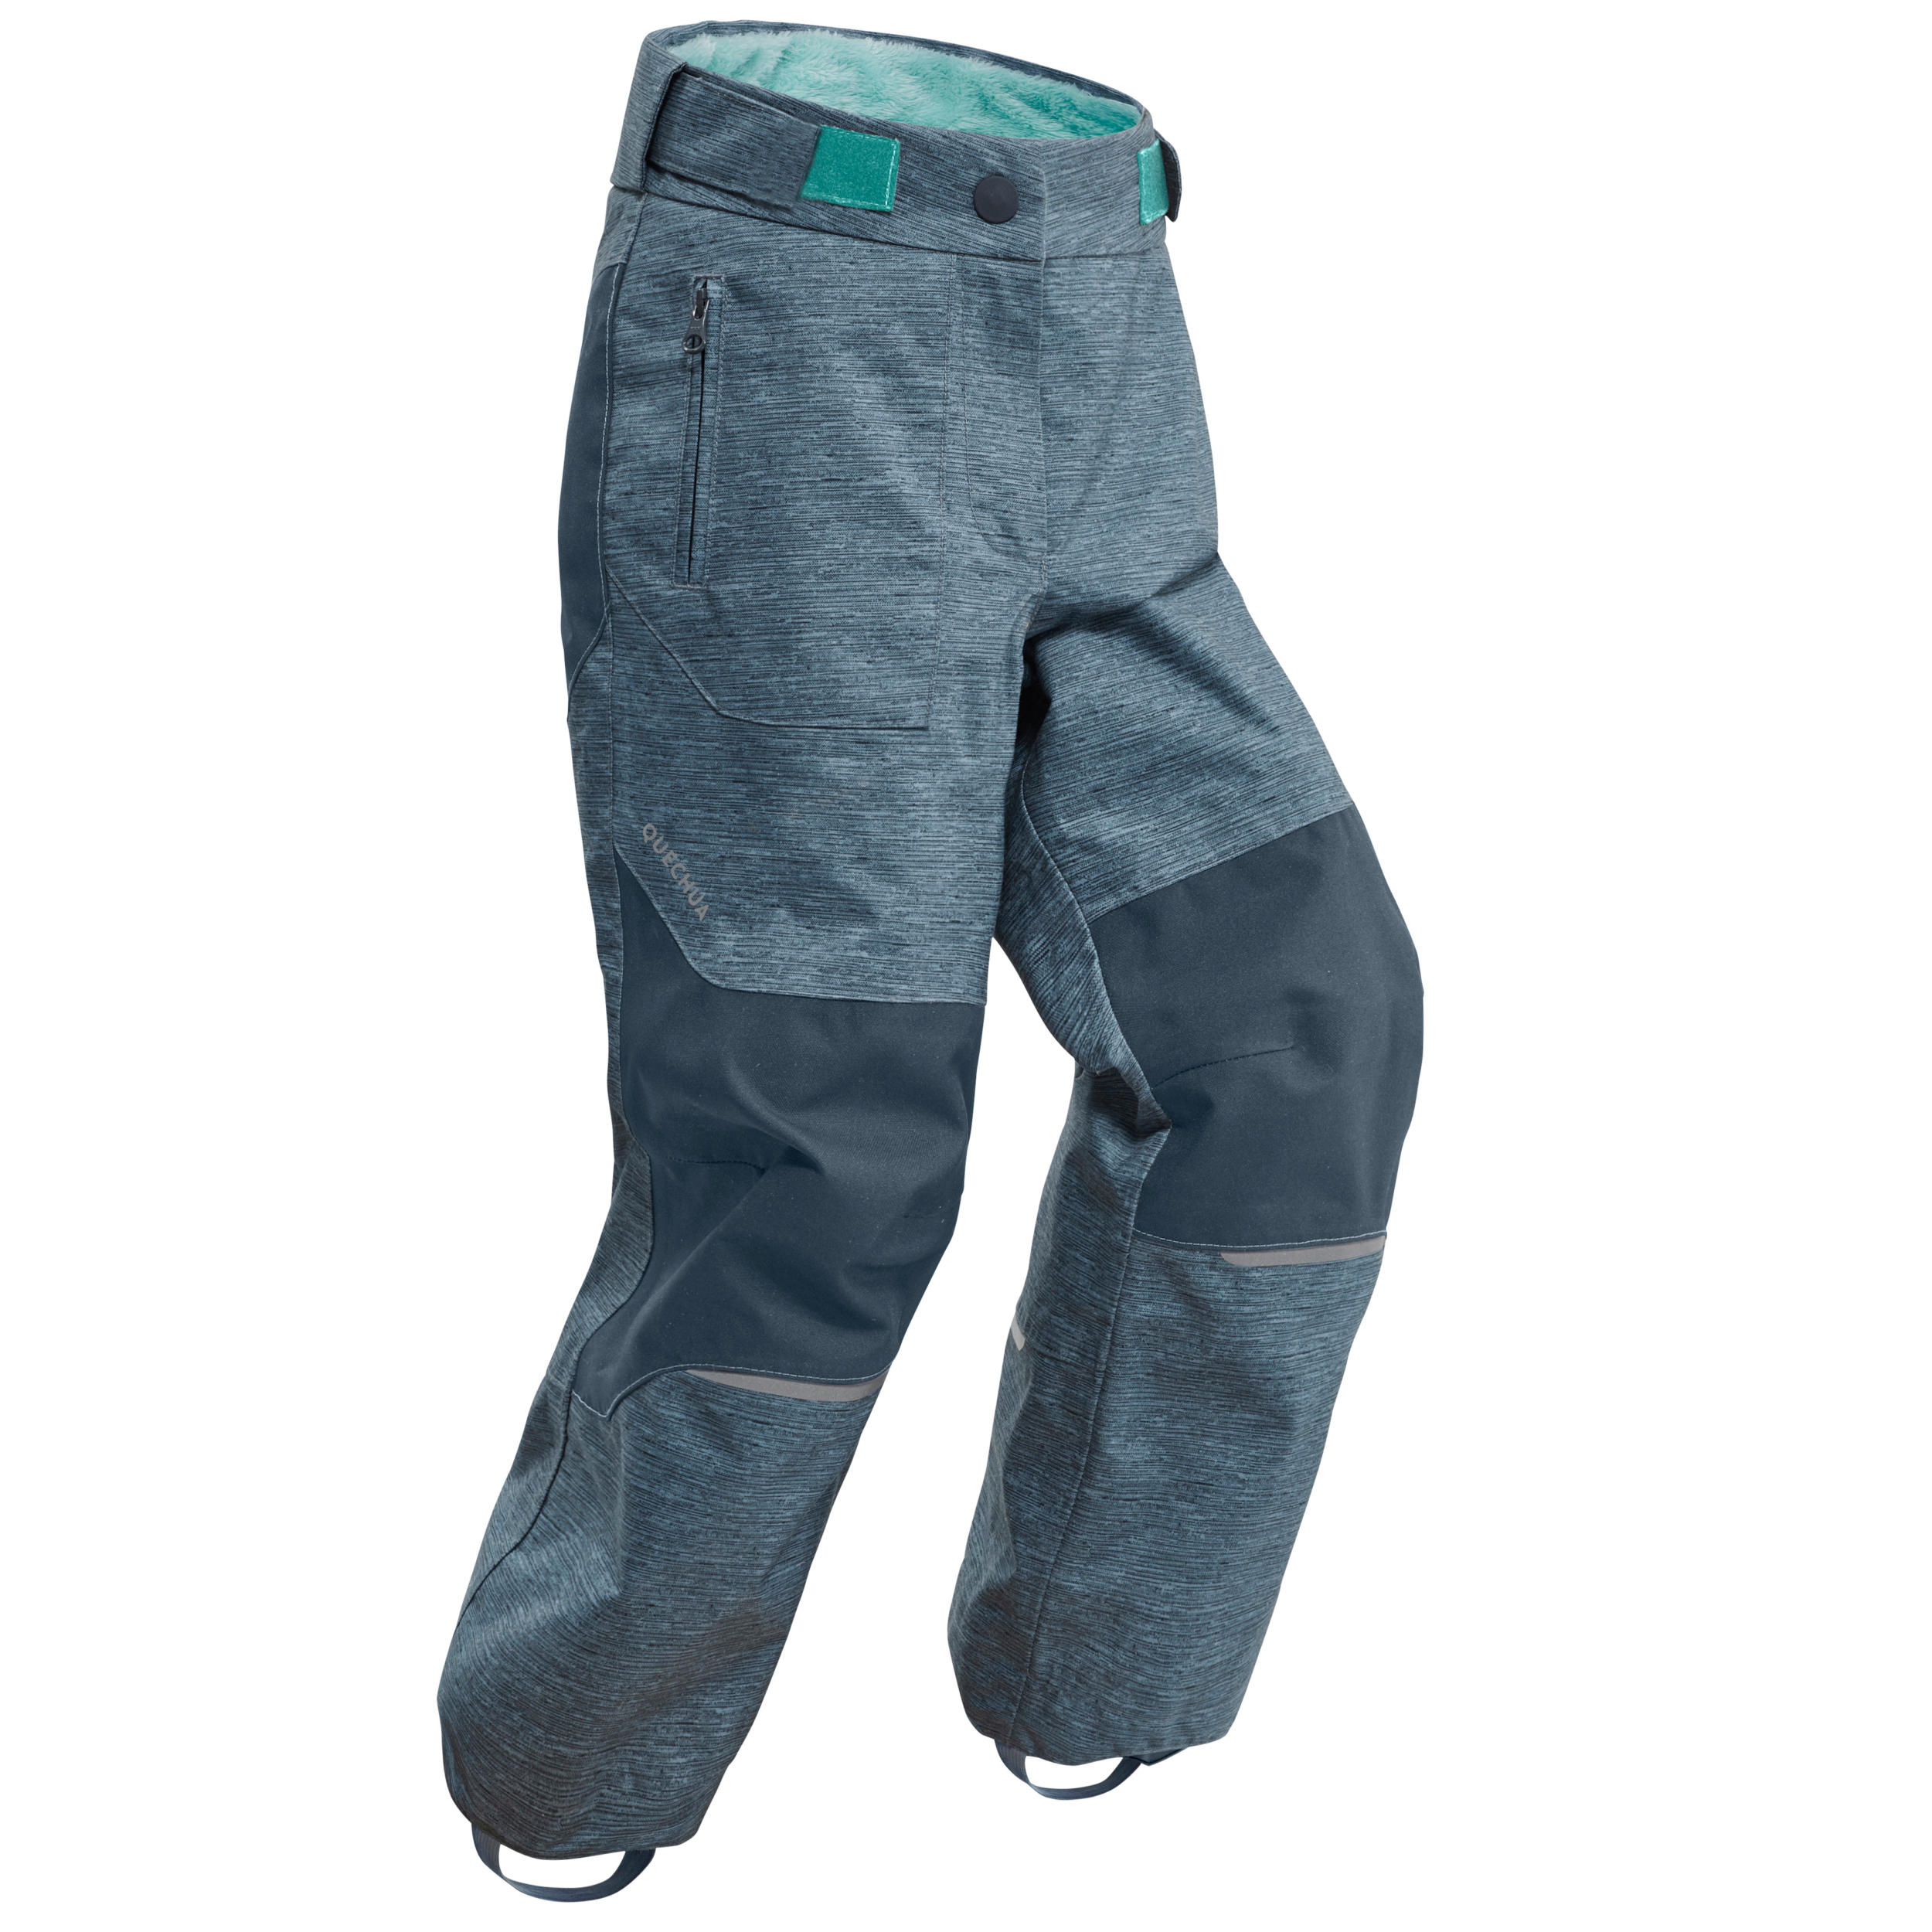 Pantalon Impermeabil iarnă/drumeție pe zăpadă SH500 U-WARM Verde Băieți 2- 6 ani